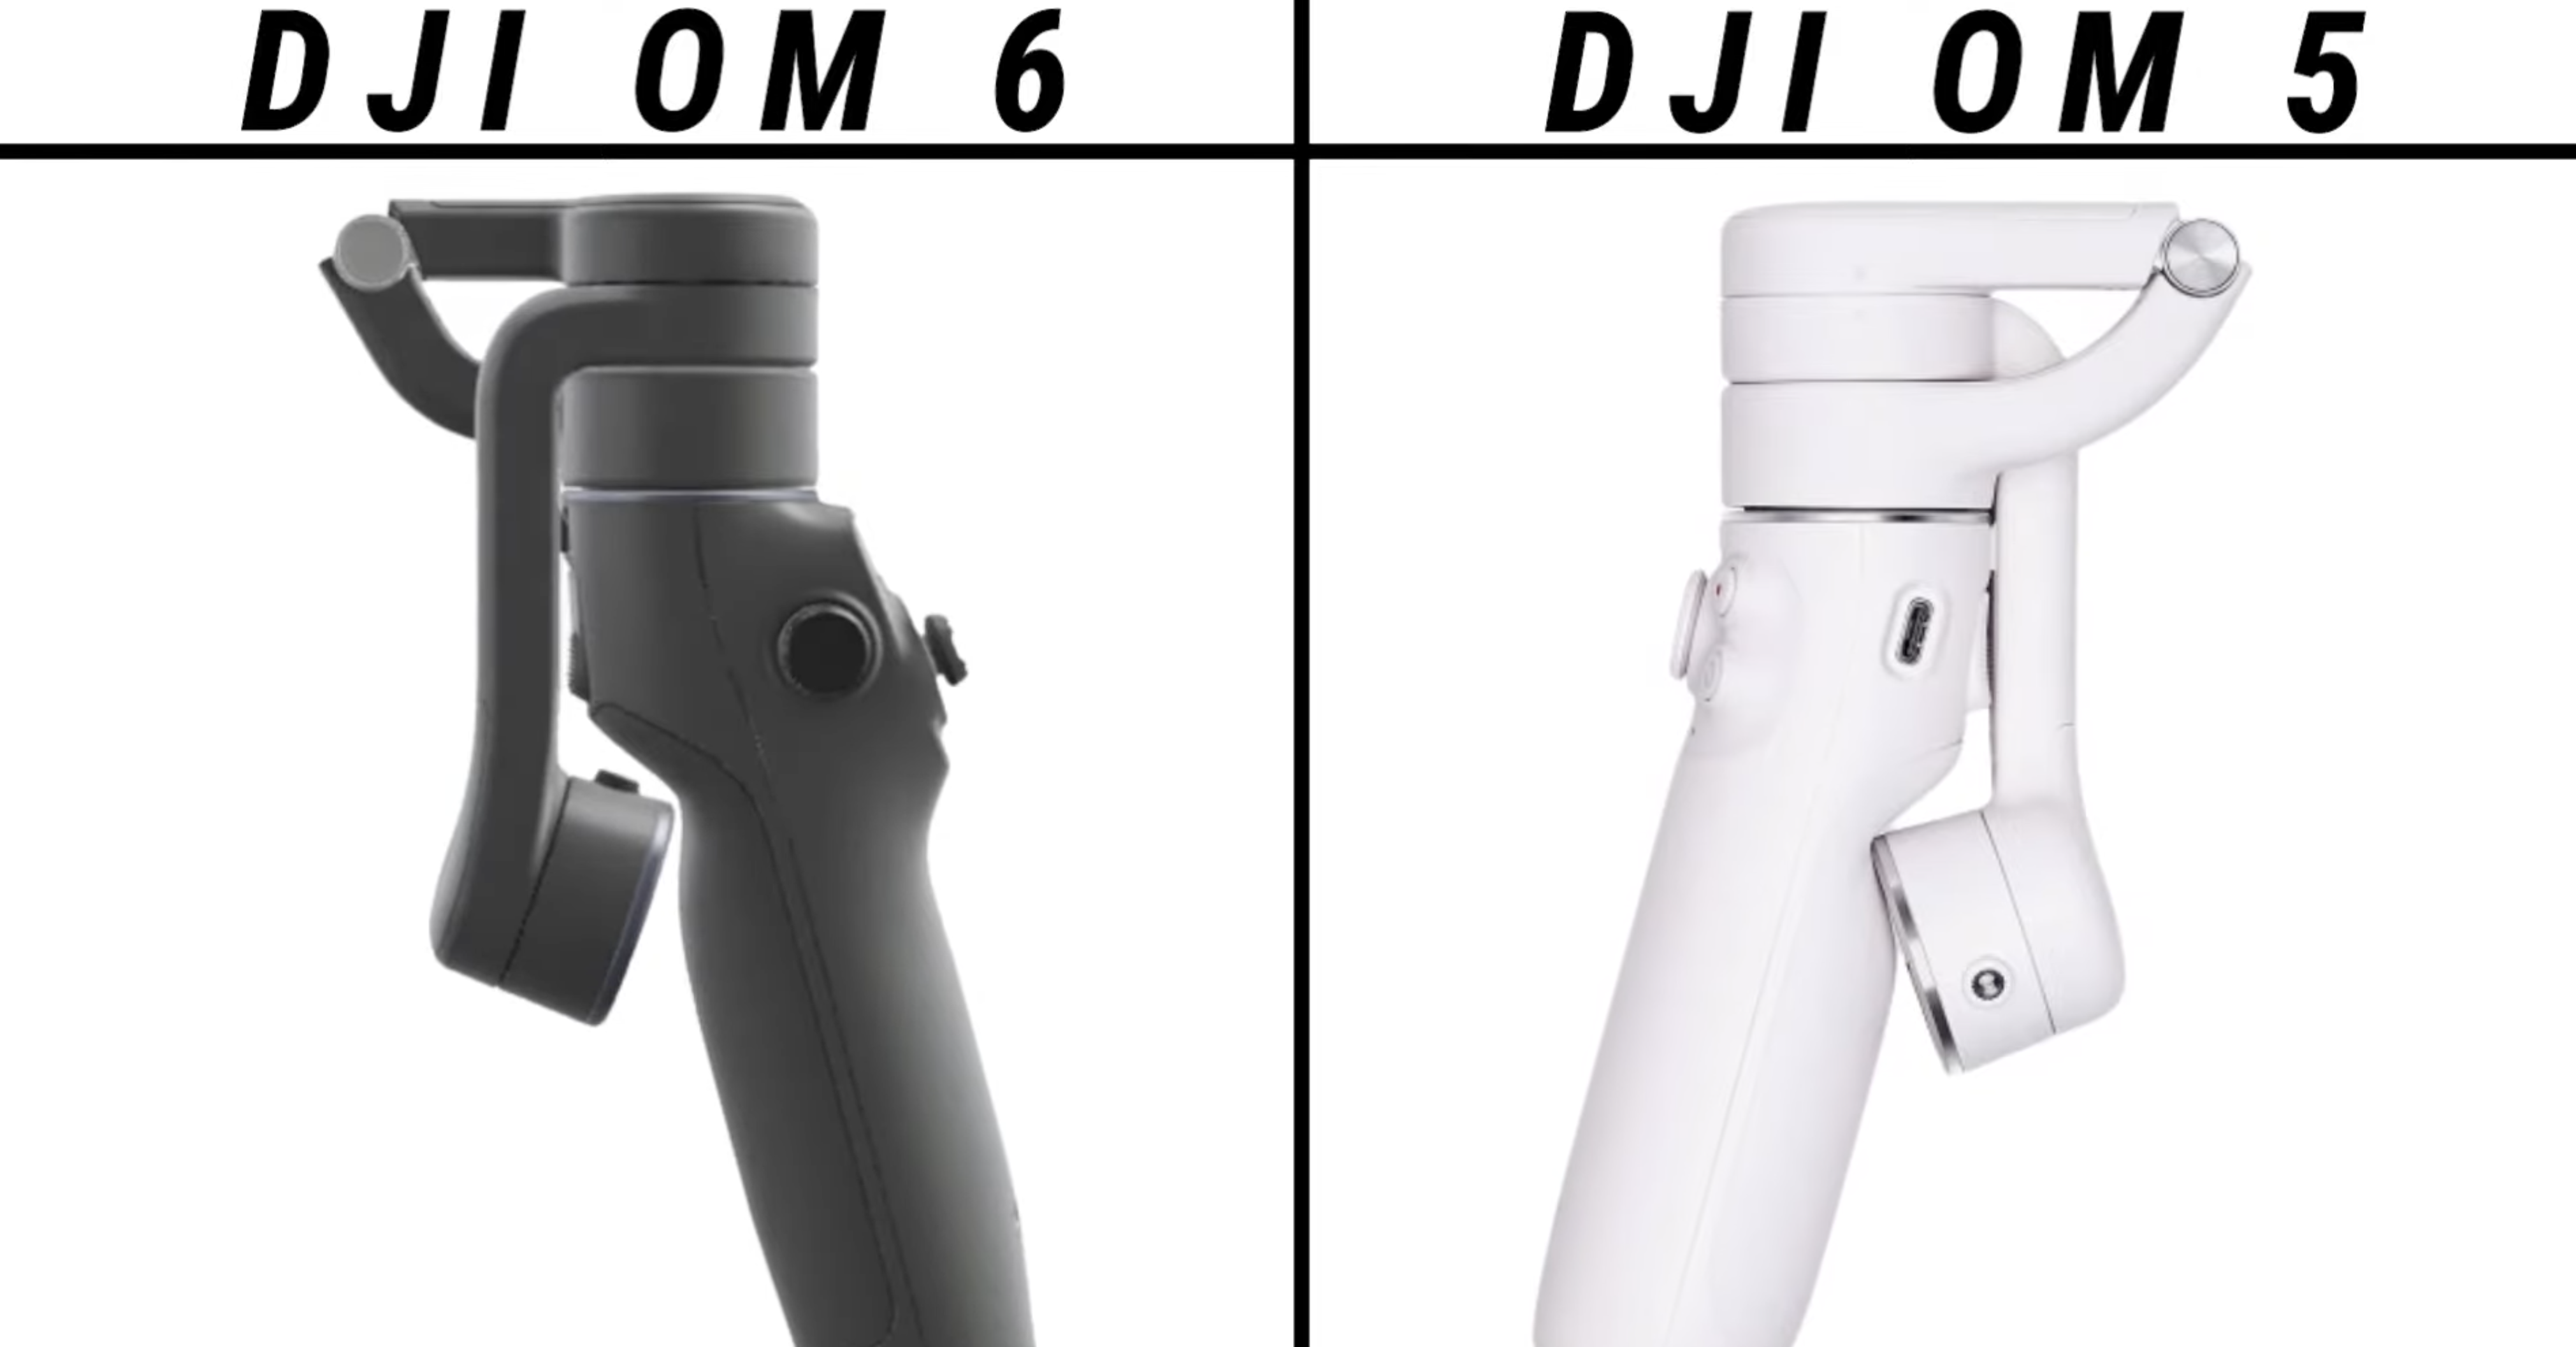 DJI OM 6 vs DJI OM SE: Which is Better?